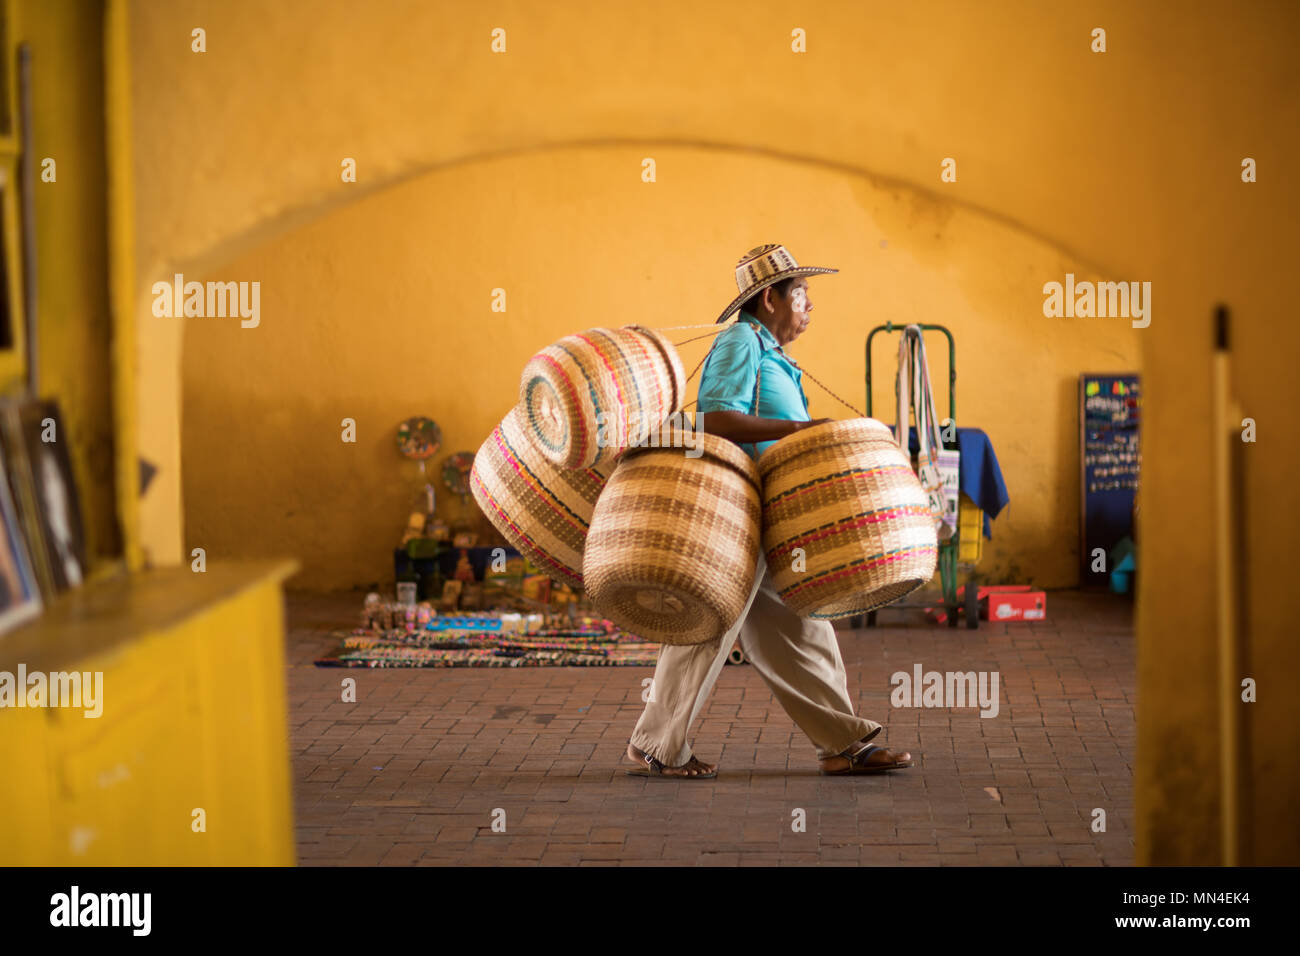 Un homme la vente de paniers dans la vieille ville, Carthagène, Colombie, Amérique du Sud Banque D'Images